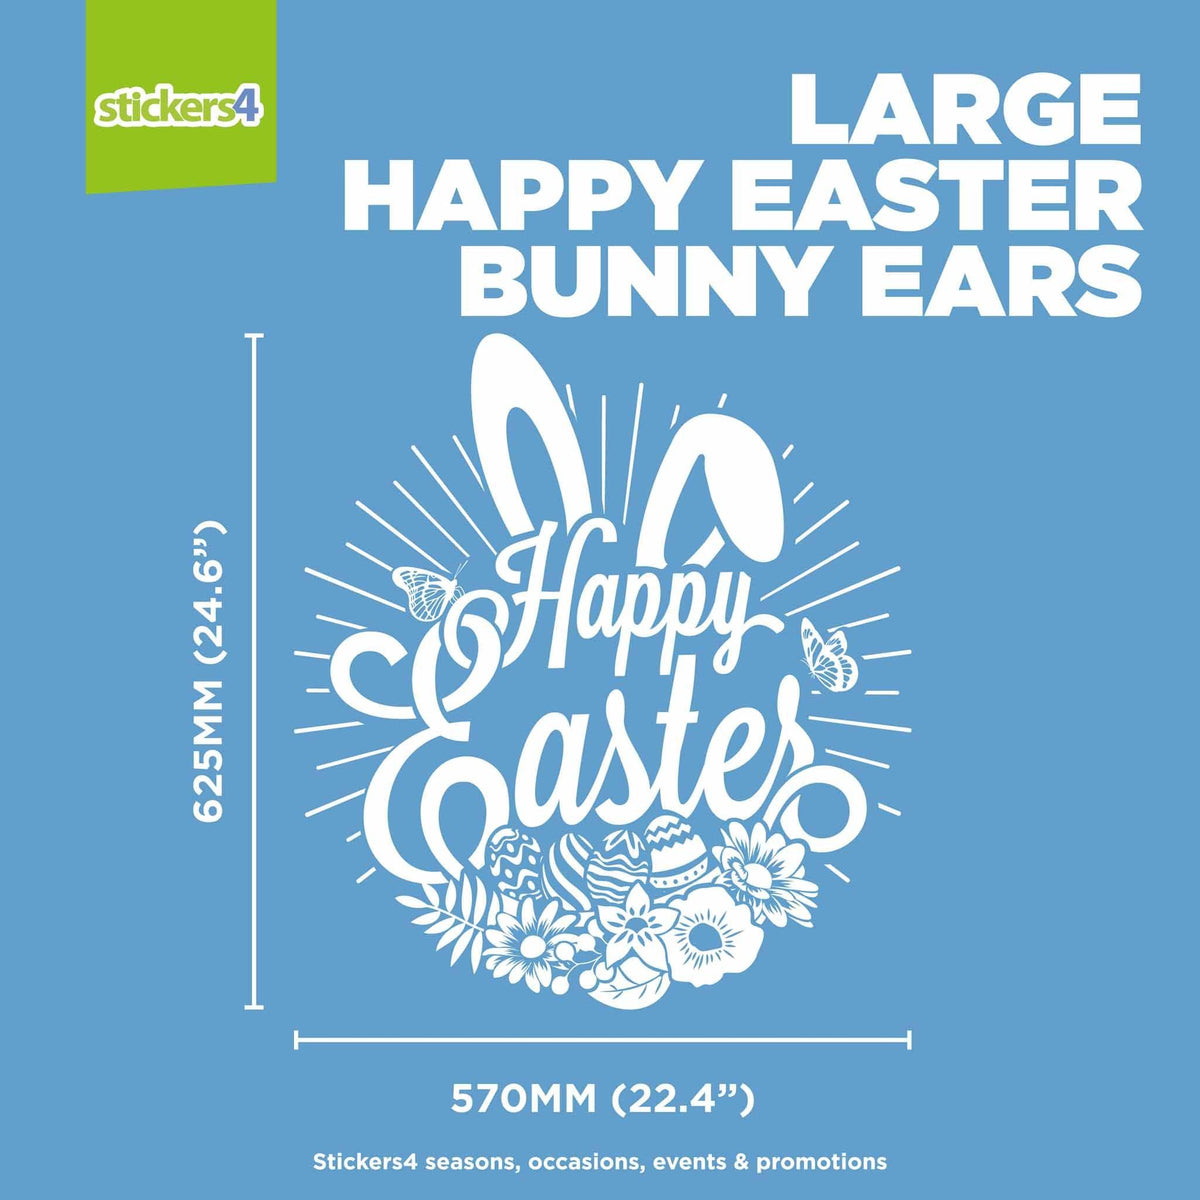 Happy Easter Bunny Ears Window Cling Sticker